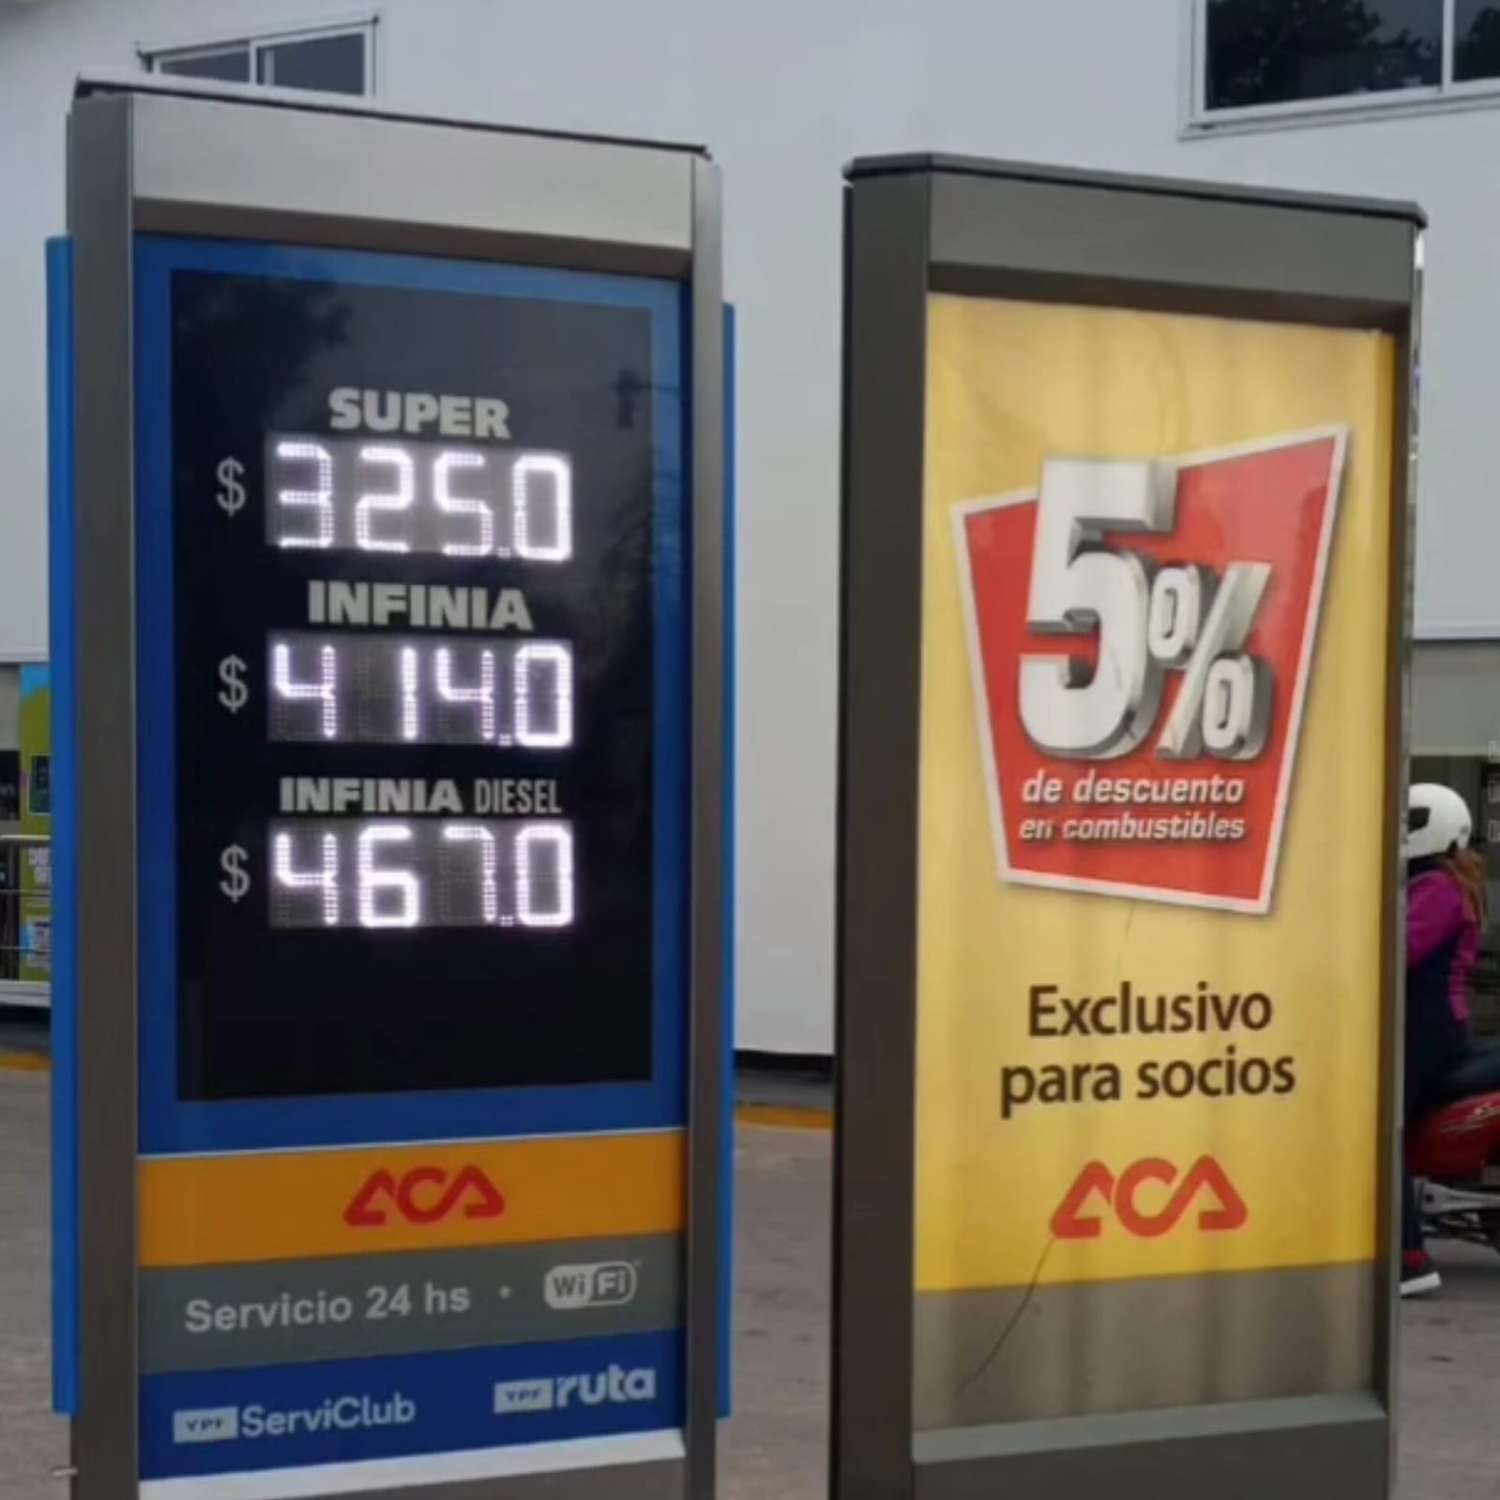 Nuevos precios en las estaciones de servicios venadense. Foto: Fm Dale!